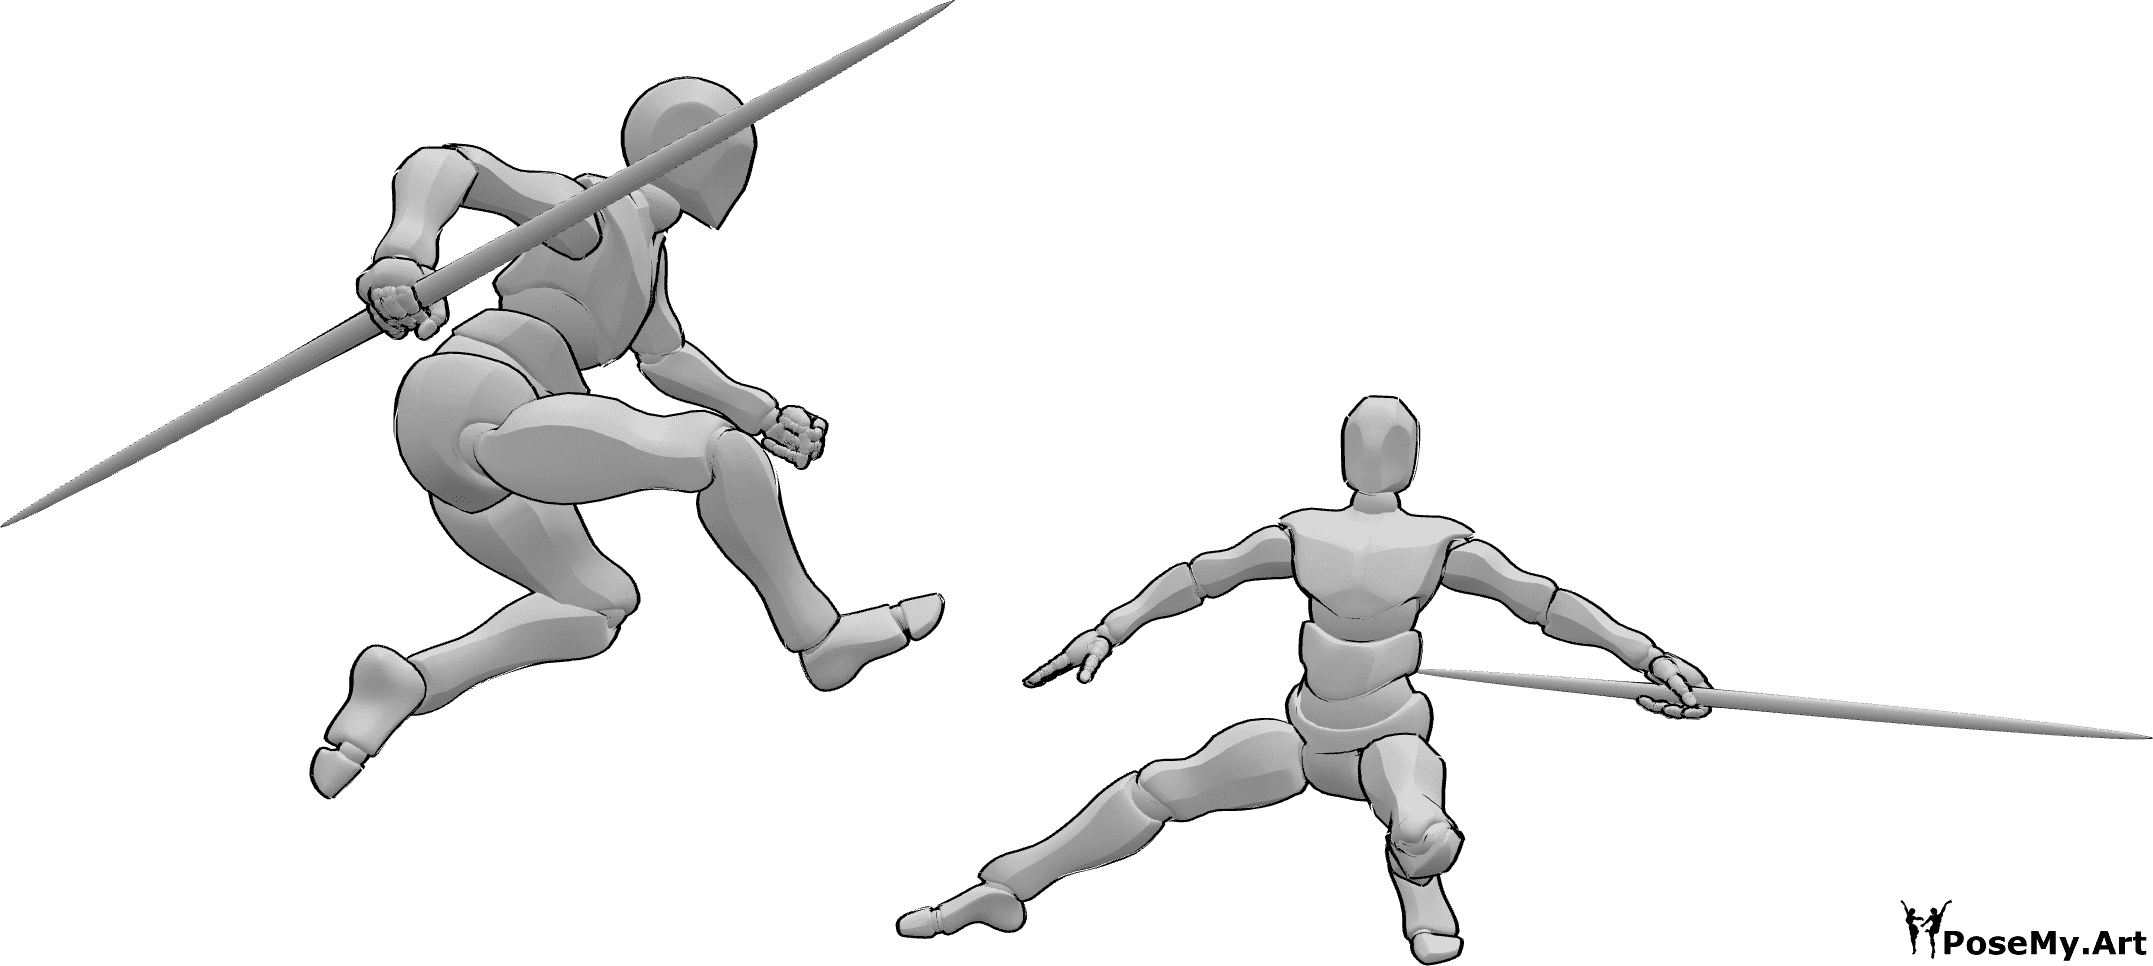 Referência de poses- Os bastões de combate fazem pose - Dois homens estão a lutar com bastões, um deles está a saltar de pose